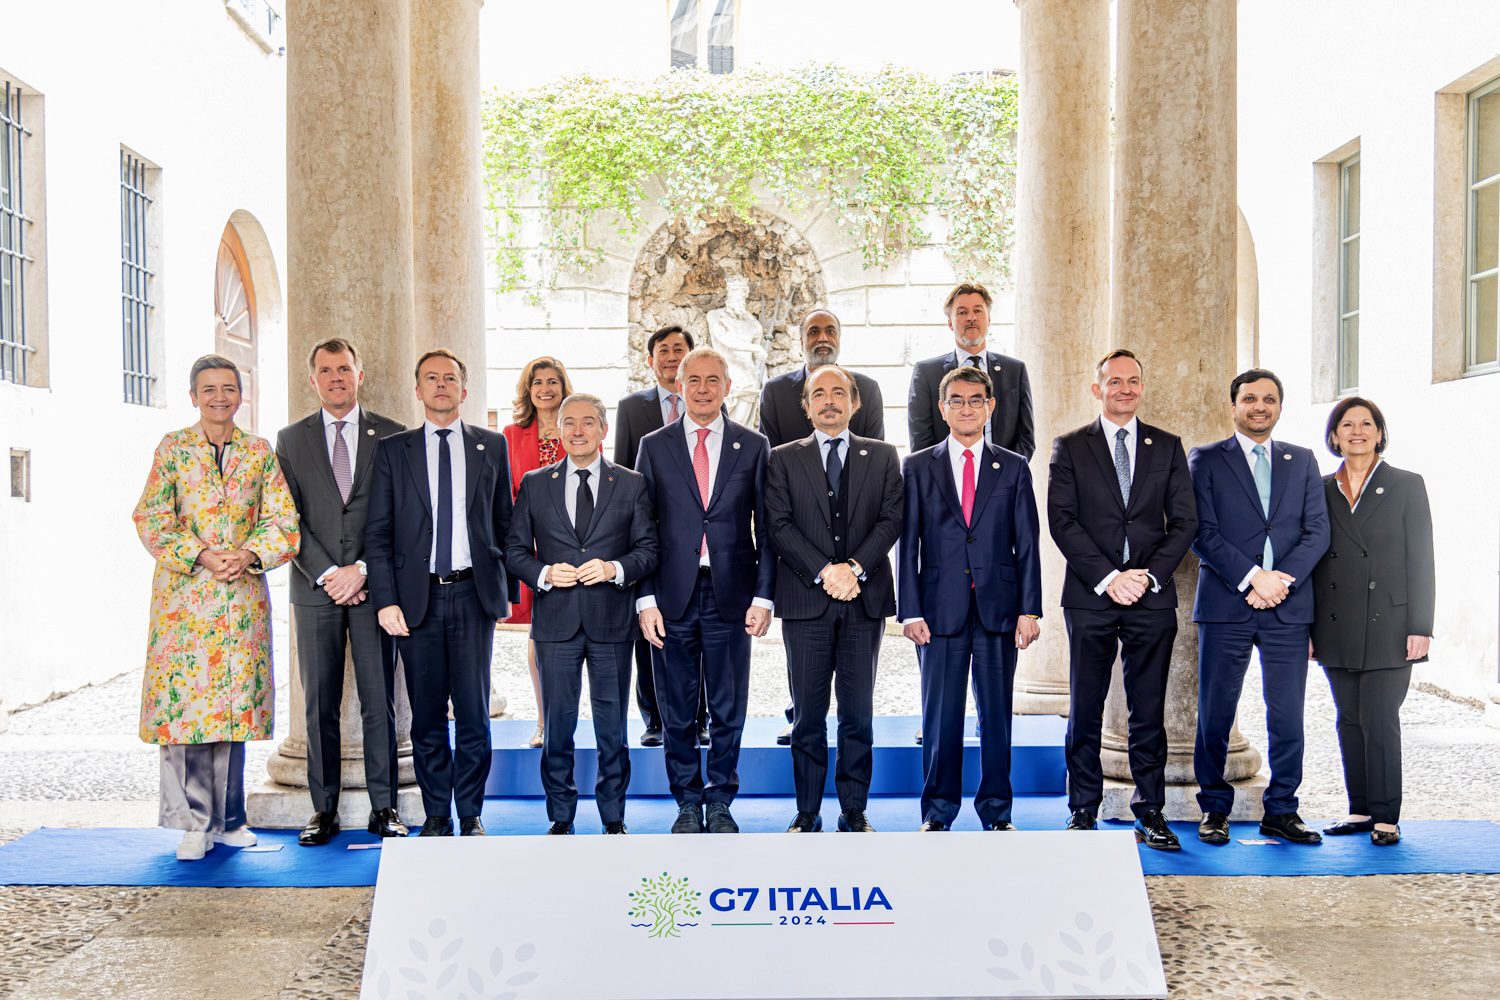 Al G7 sull’intelligenza artificiale si è parlato di sviluppo etico